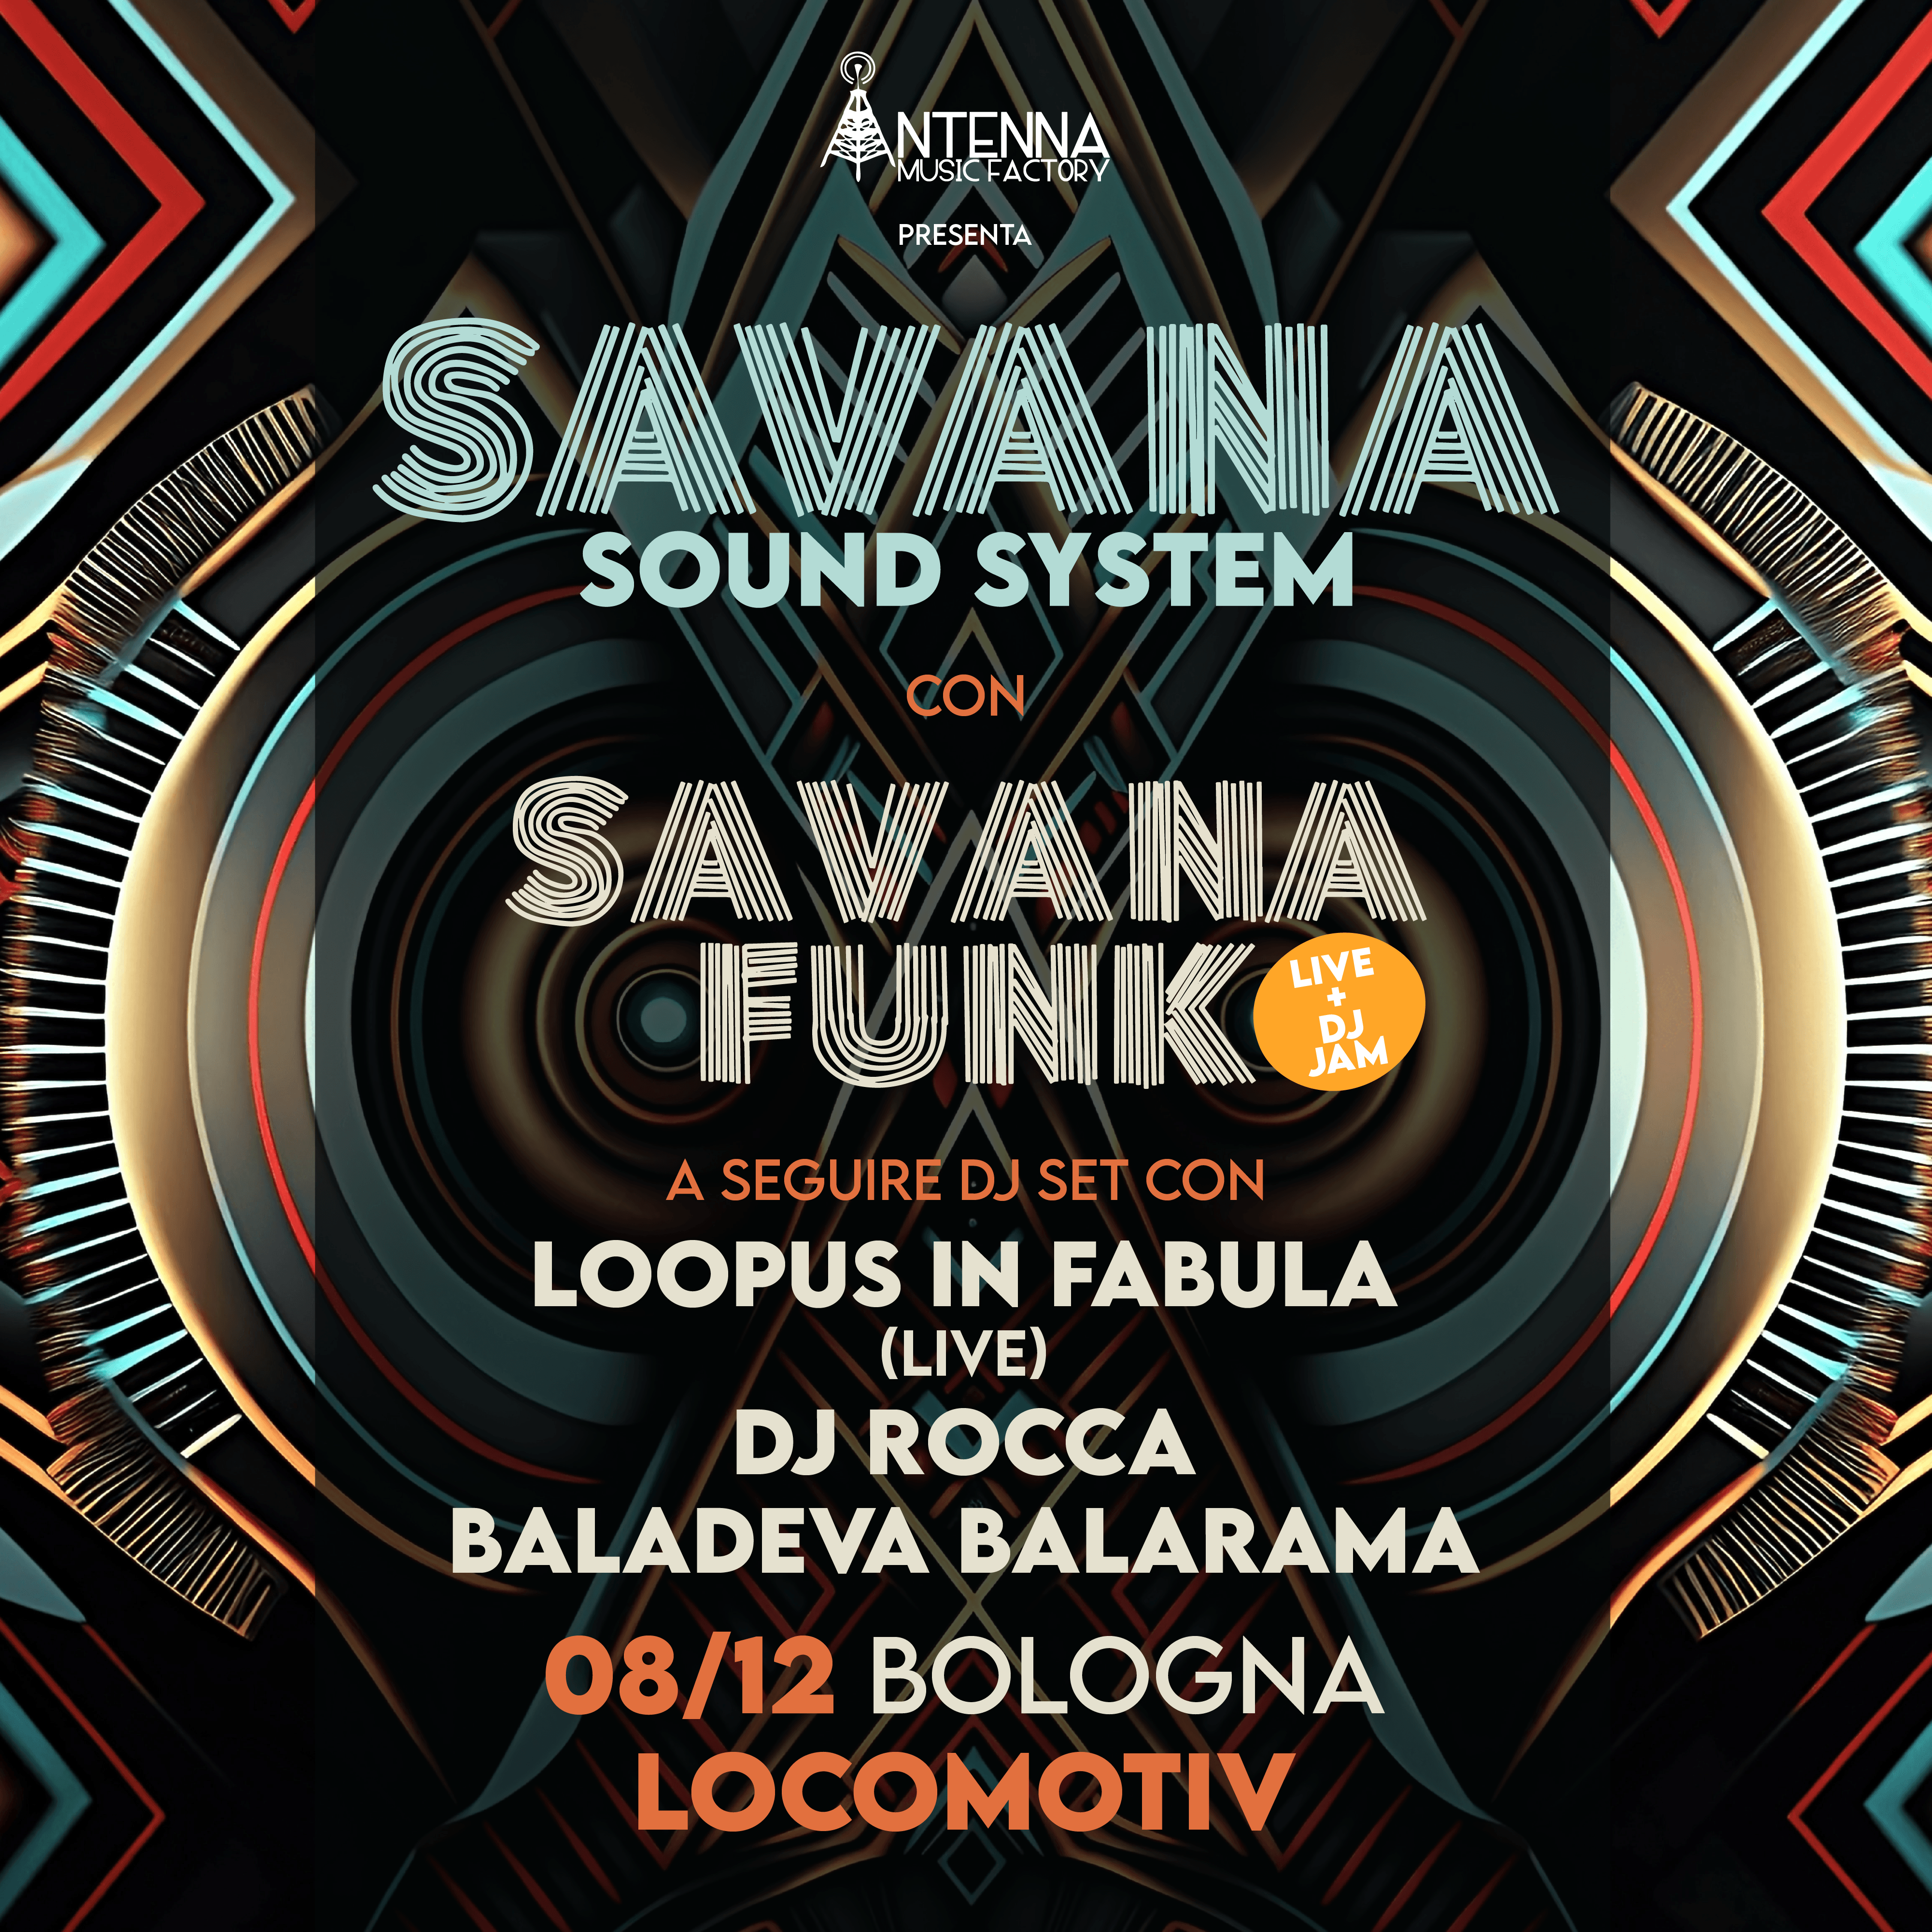 Savana Sound System - Savana Funk + aftershow - Página frontal